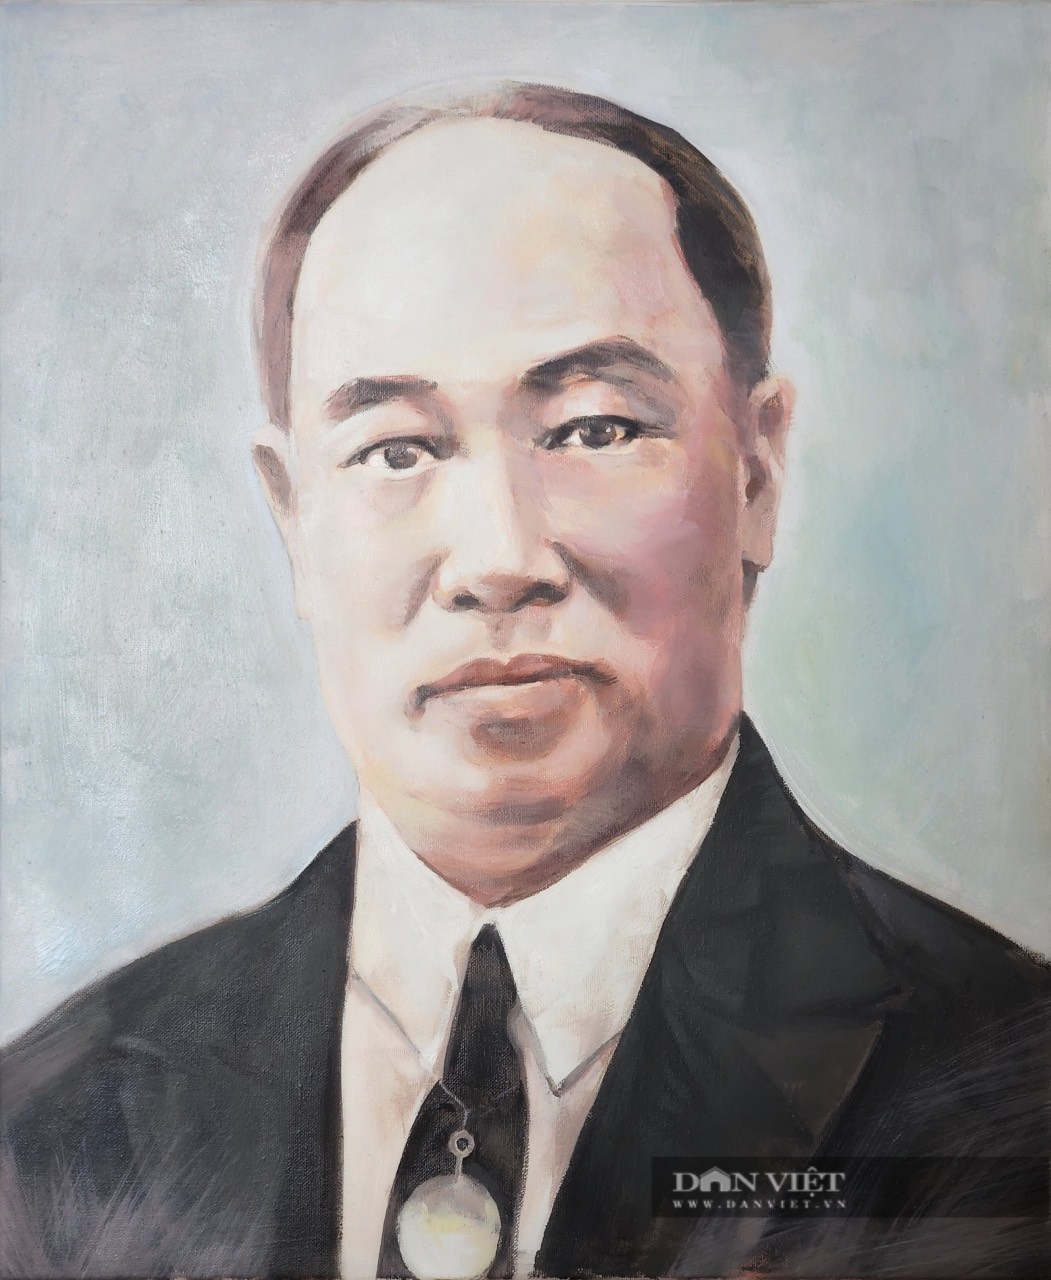 Triển lãm tranh vẽ về doanh nhân Phạm Nhật Vượng, Trương Gia Bình...- Ảnh 6.